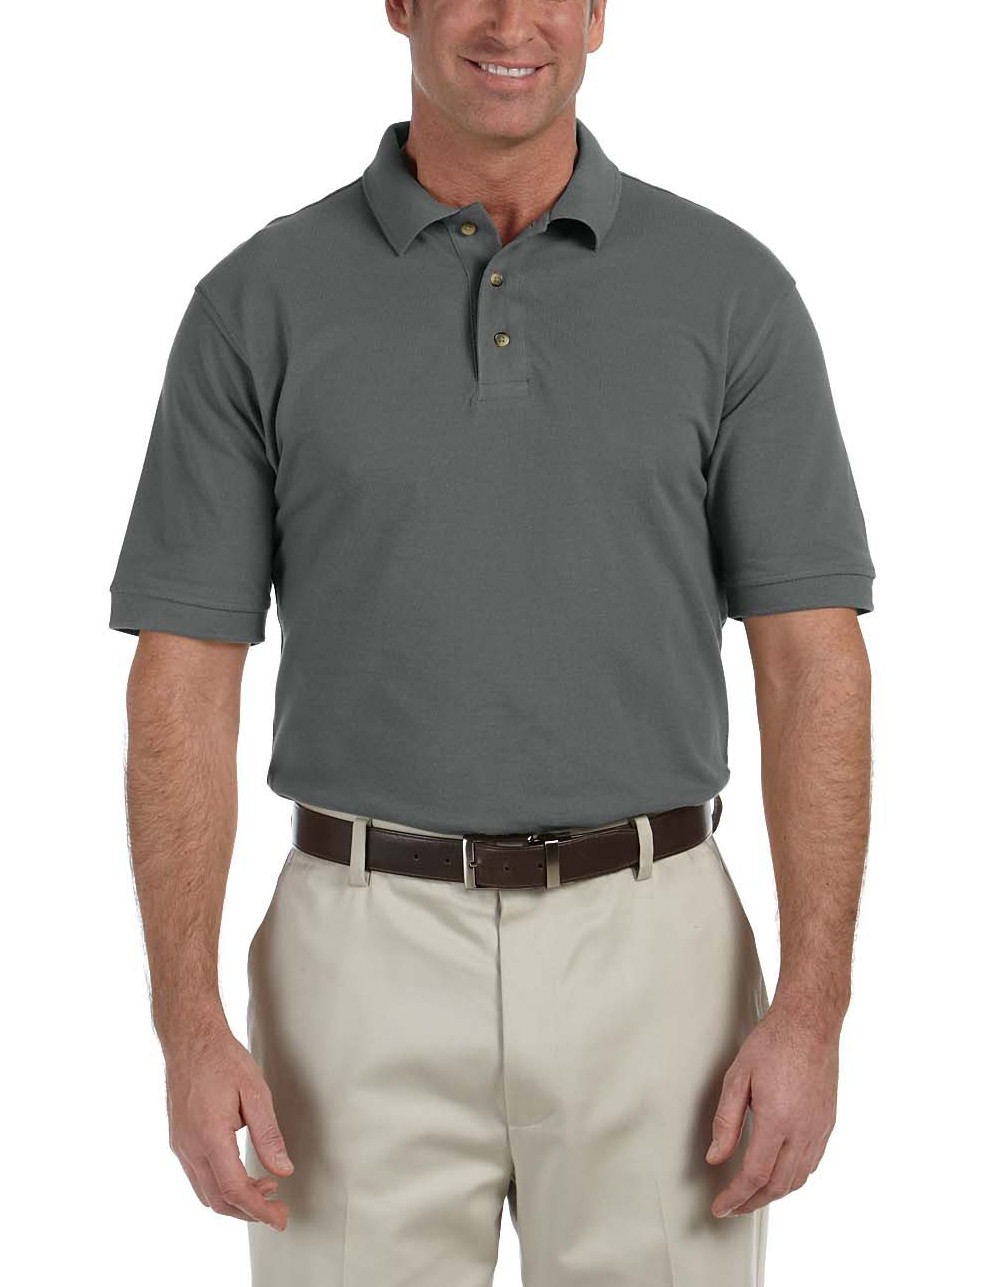 Harriton® camisa polo de algodón tejido piqué, manga corta, variedad de colores. M200 carbón